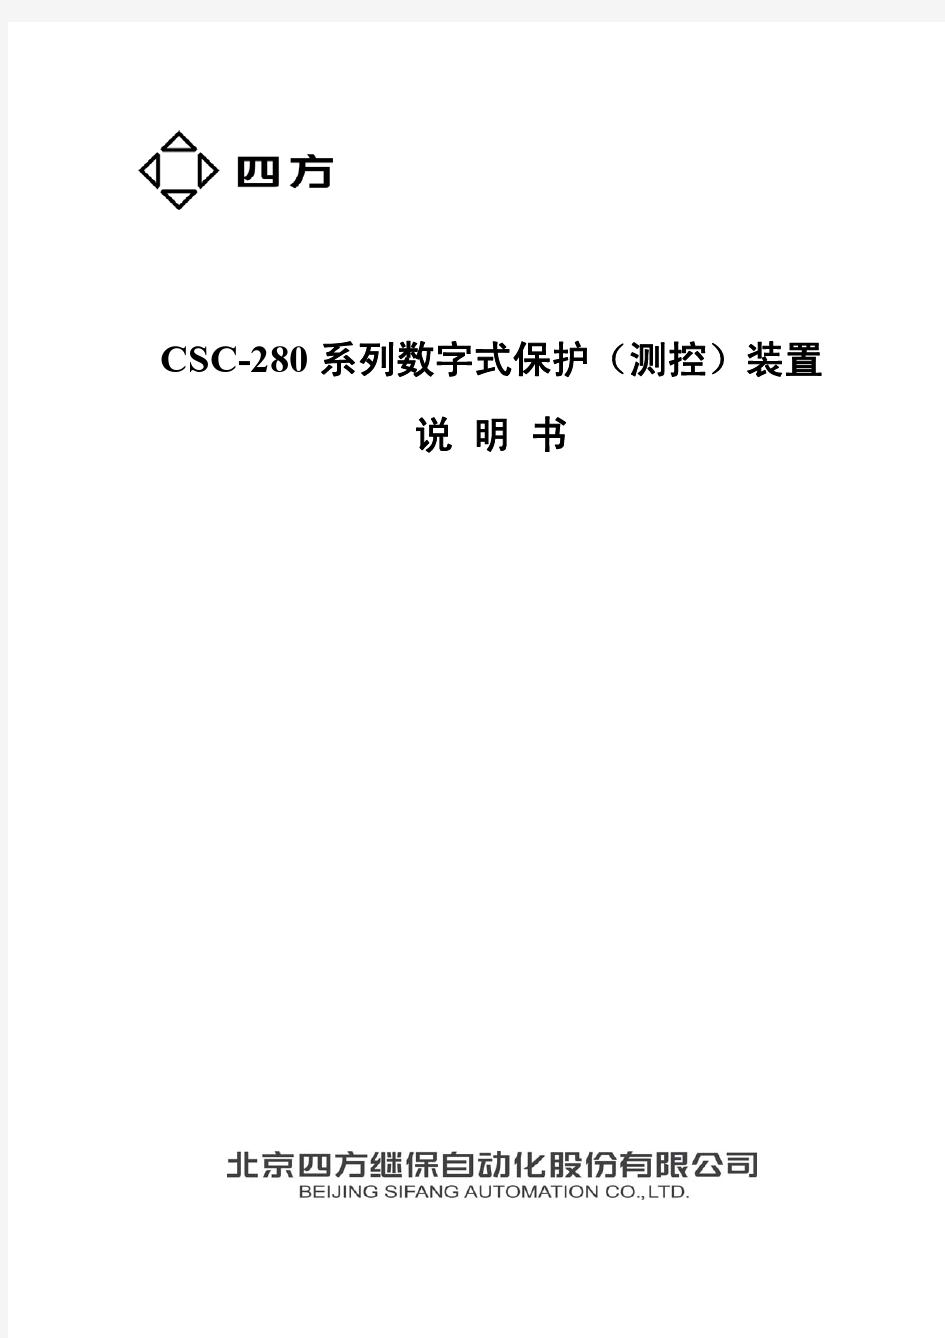 北京四方-280系列数字式保护(测控)装置说明书(0SF.451.069)_V2.0